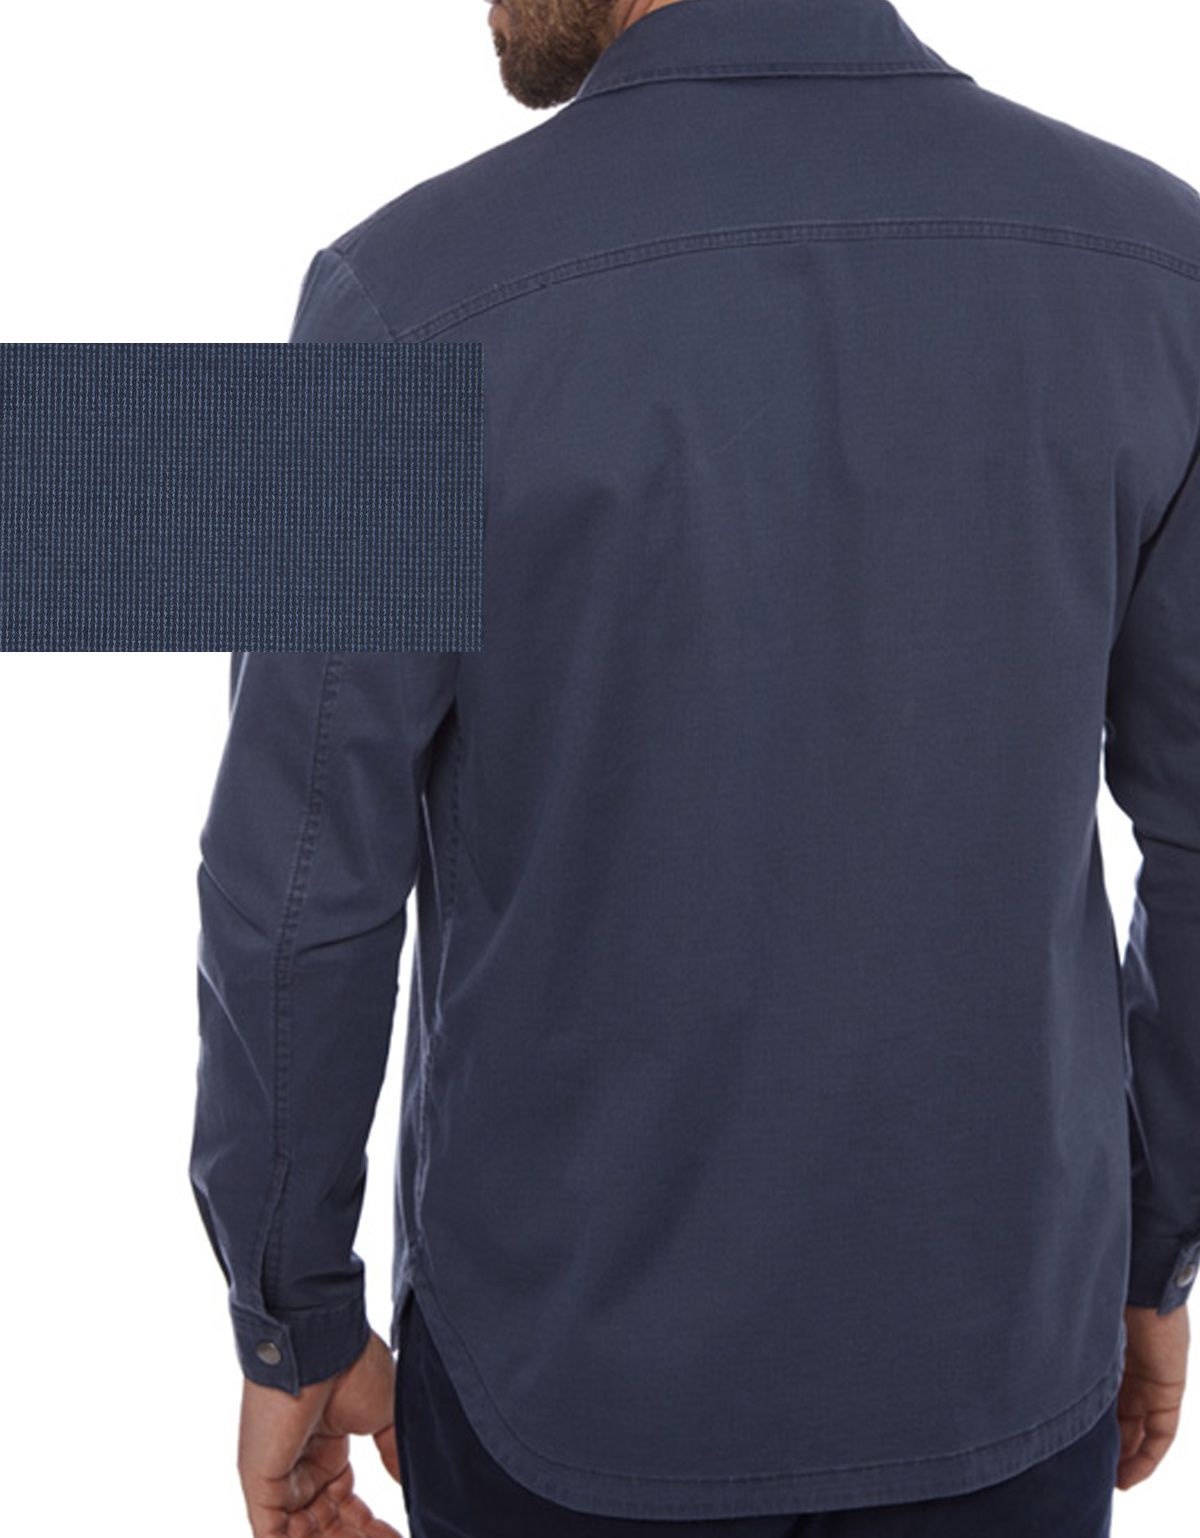 Рубашка мужская оvershirts w.Wegener из микровельвета | купить в интернет-магазине Olymp-Men